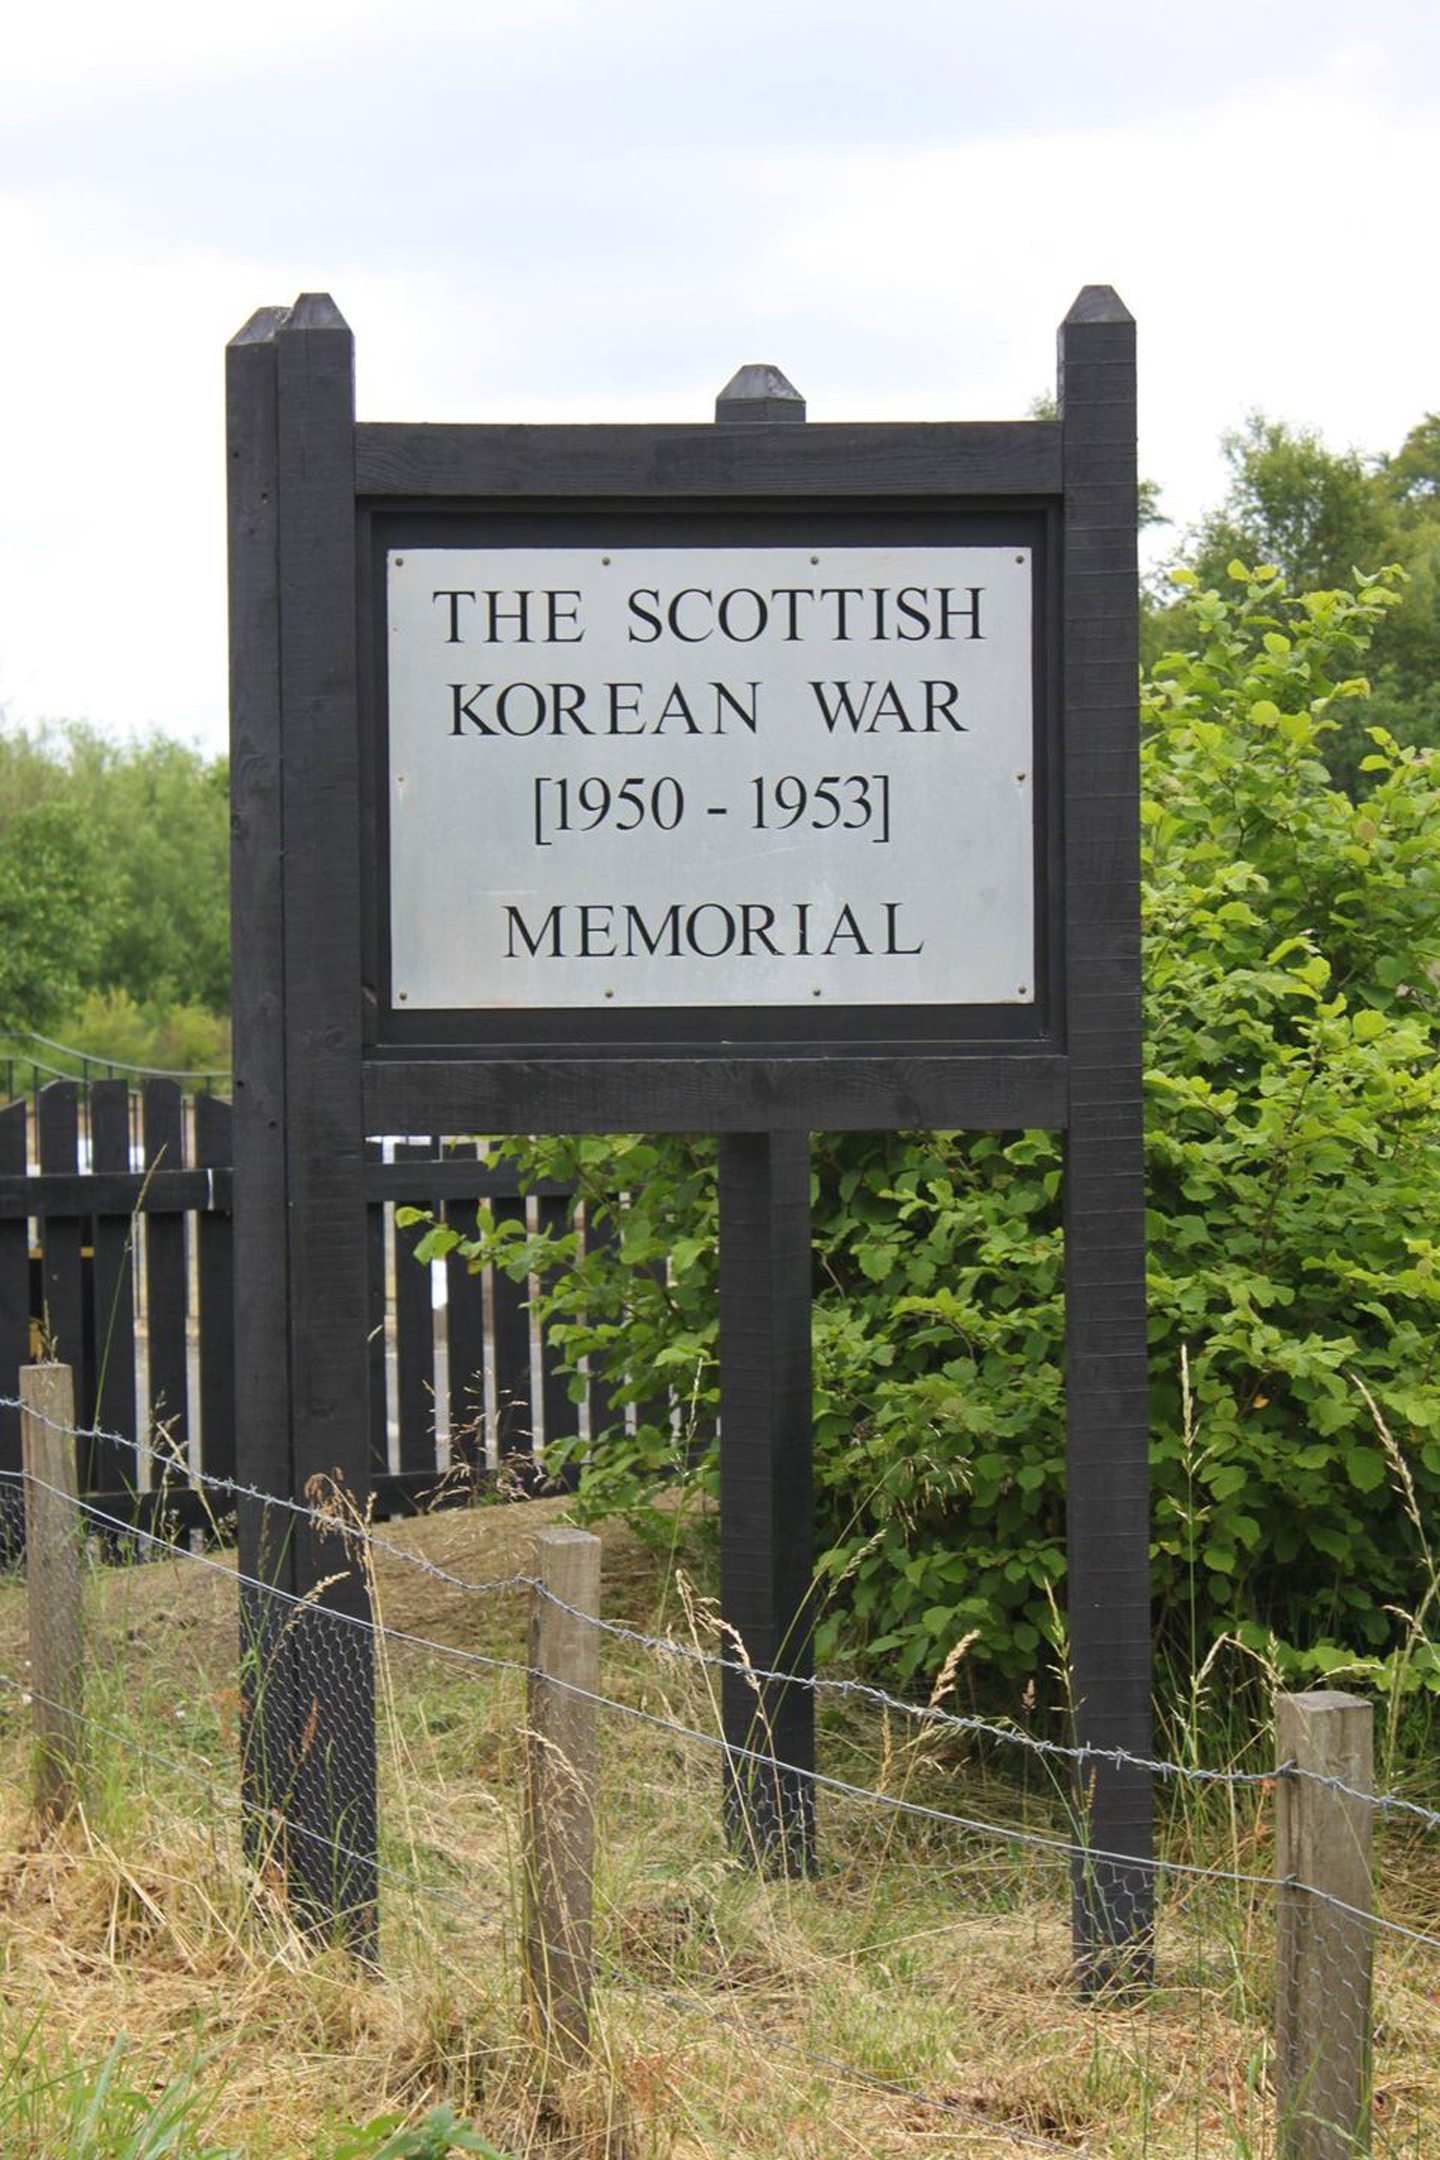 The Scottish Korean War memorial